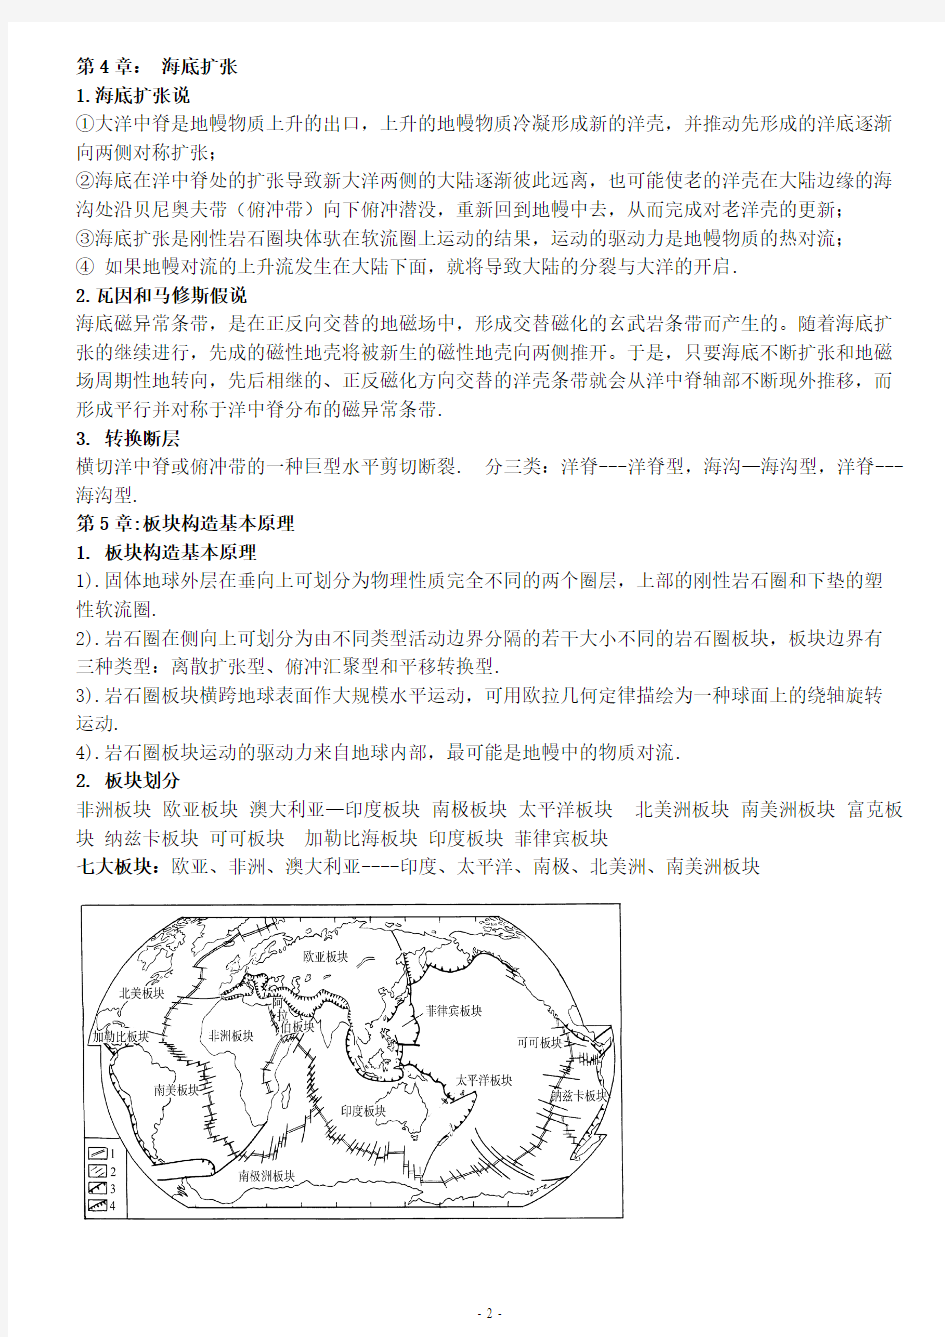 大地构造学--中国区域大地构造-推荐下载